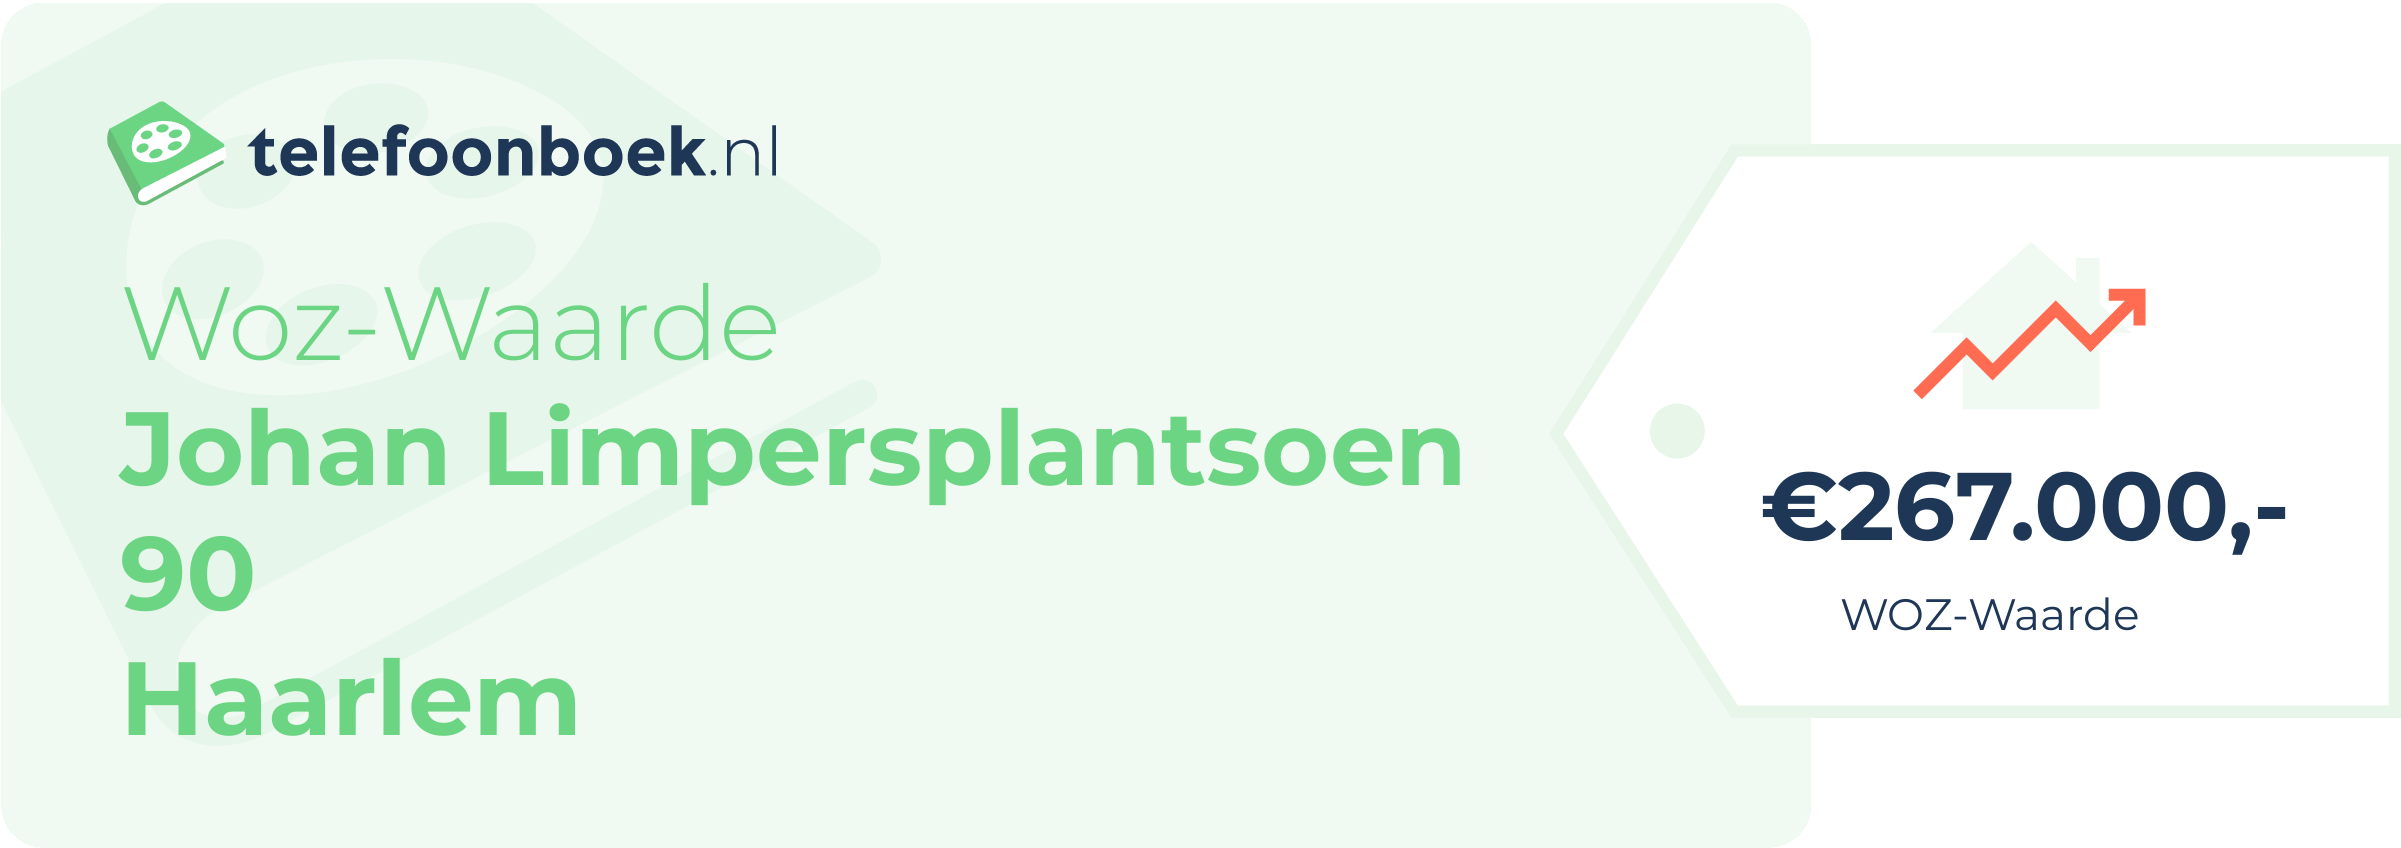 WOZ-waarde Johan Limpersplantsoen 90 Haarlem